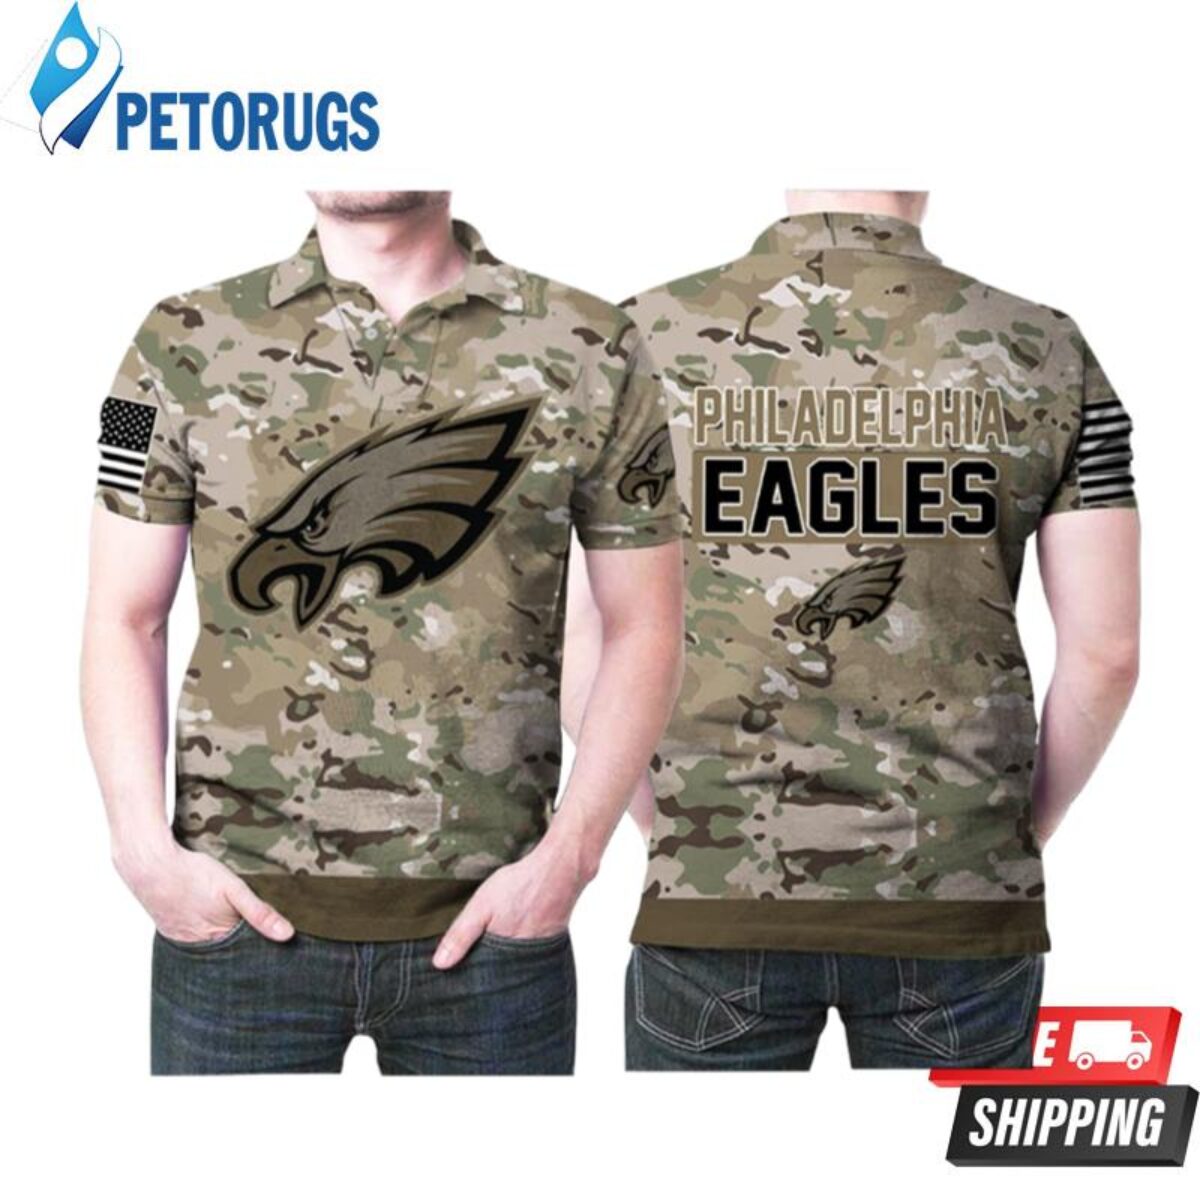 Philadelphia Eagles Polo Shirt - Peto Rugs